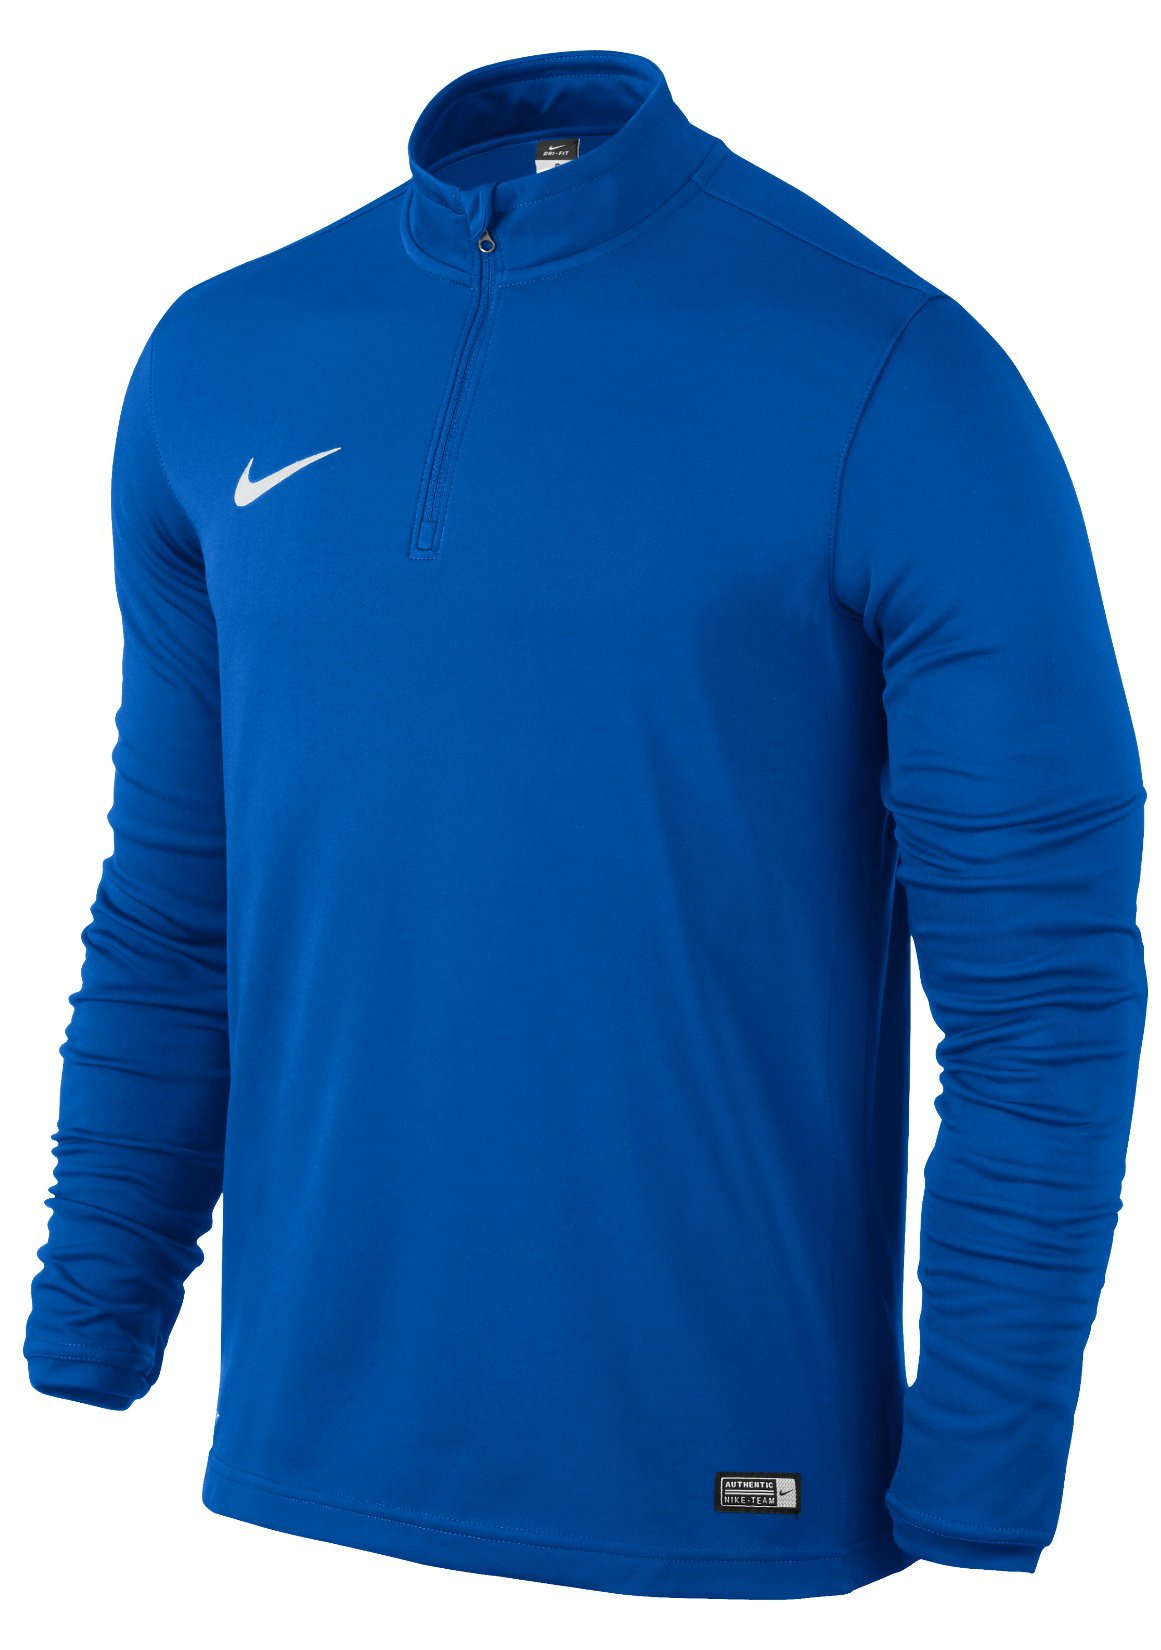 Tričko s dlhým rukávom Nike ACADEMY16 MIDLAYER TOP